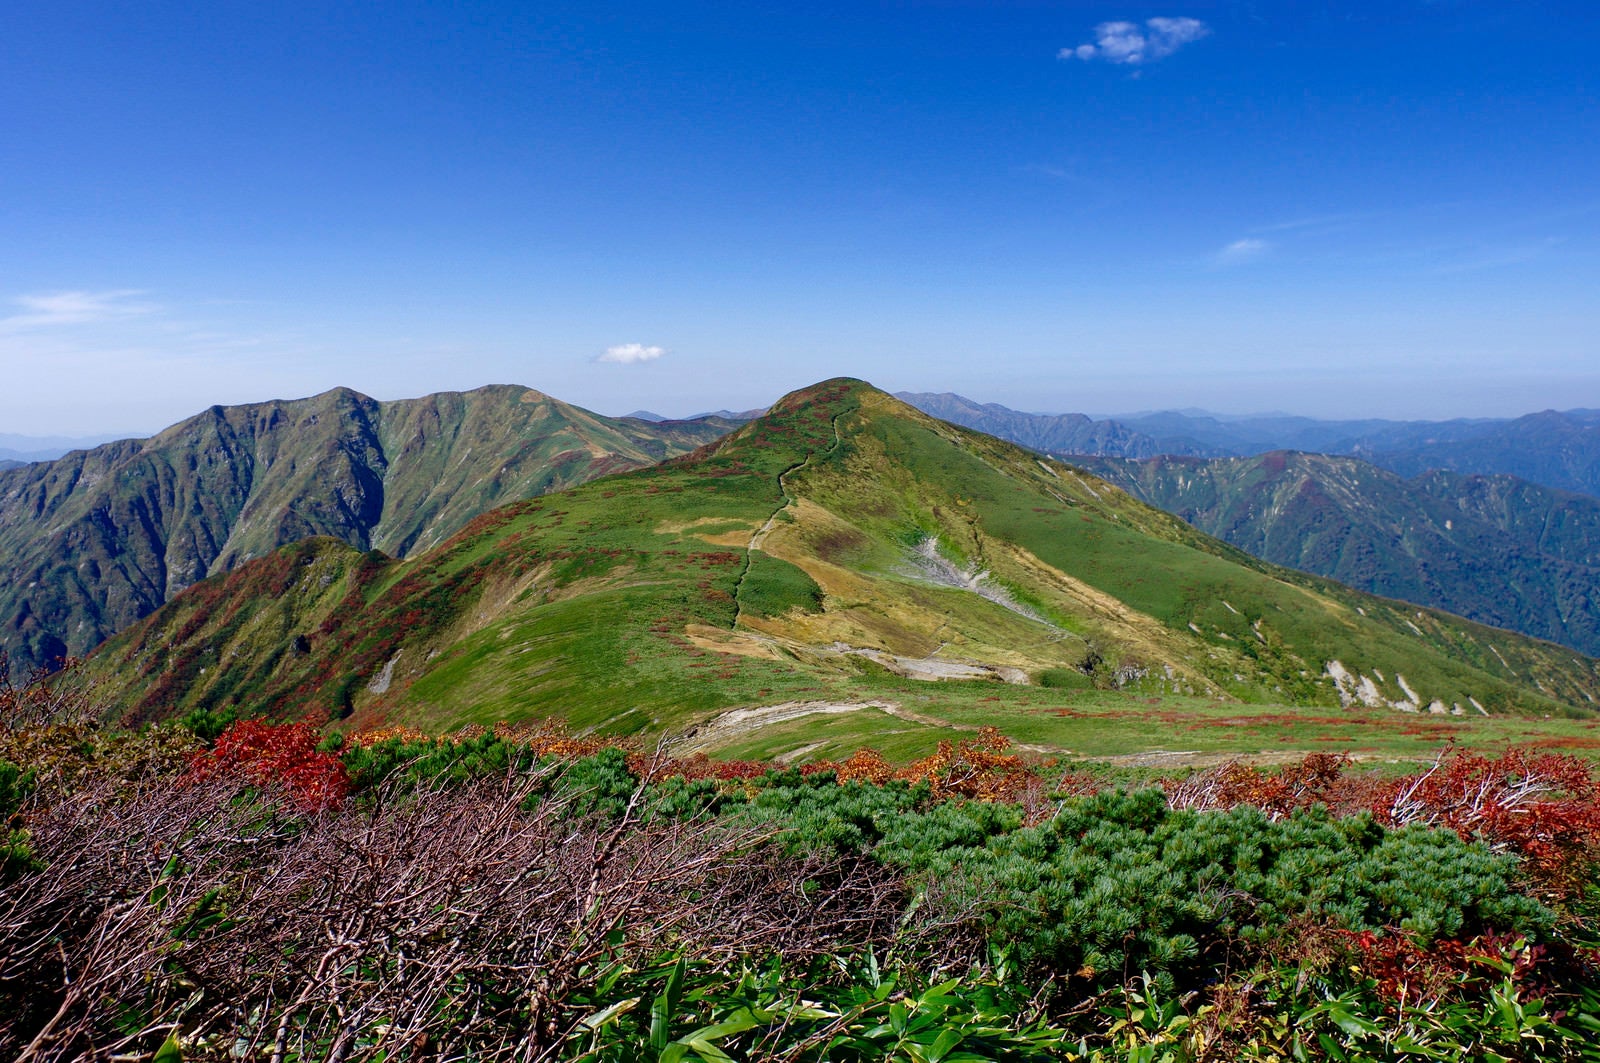 「大朝日岳避難小屋とその奥の山々の景色」の写真